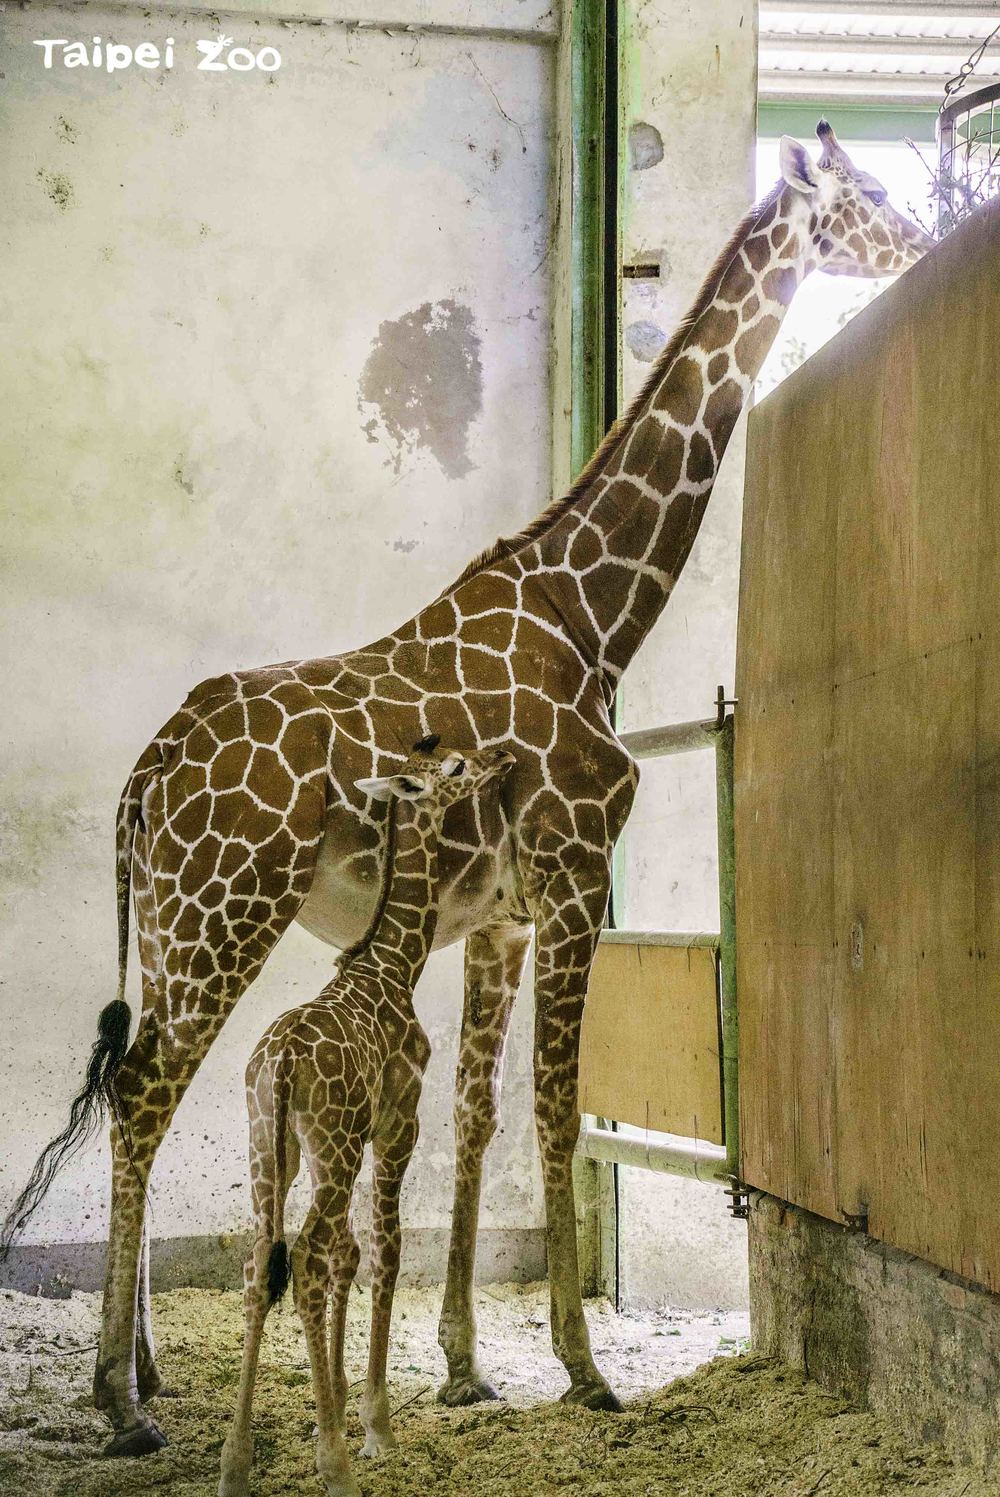 長得比保育員或獸醫師還高的寶寶，往媽媽身旁一站，立馬顯得很嬌小  / 圖文來源 台北市立動物園